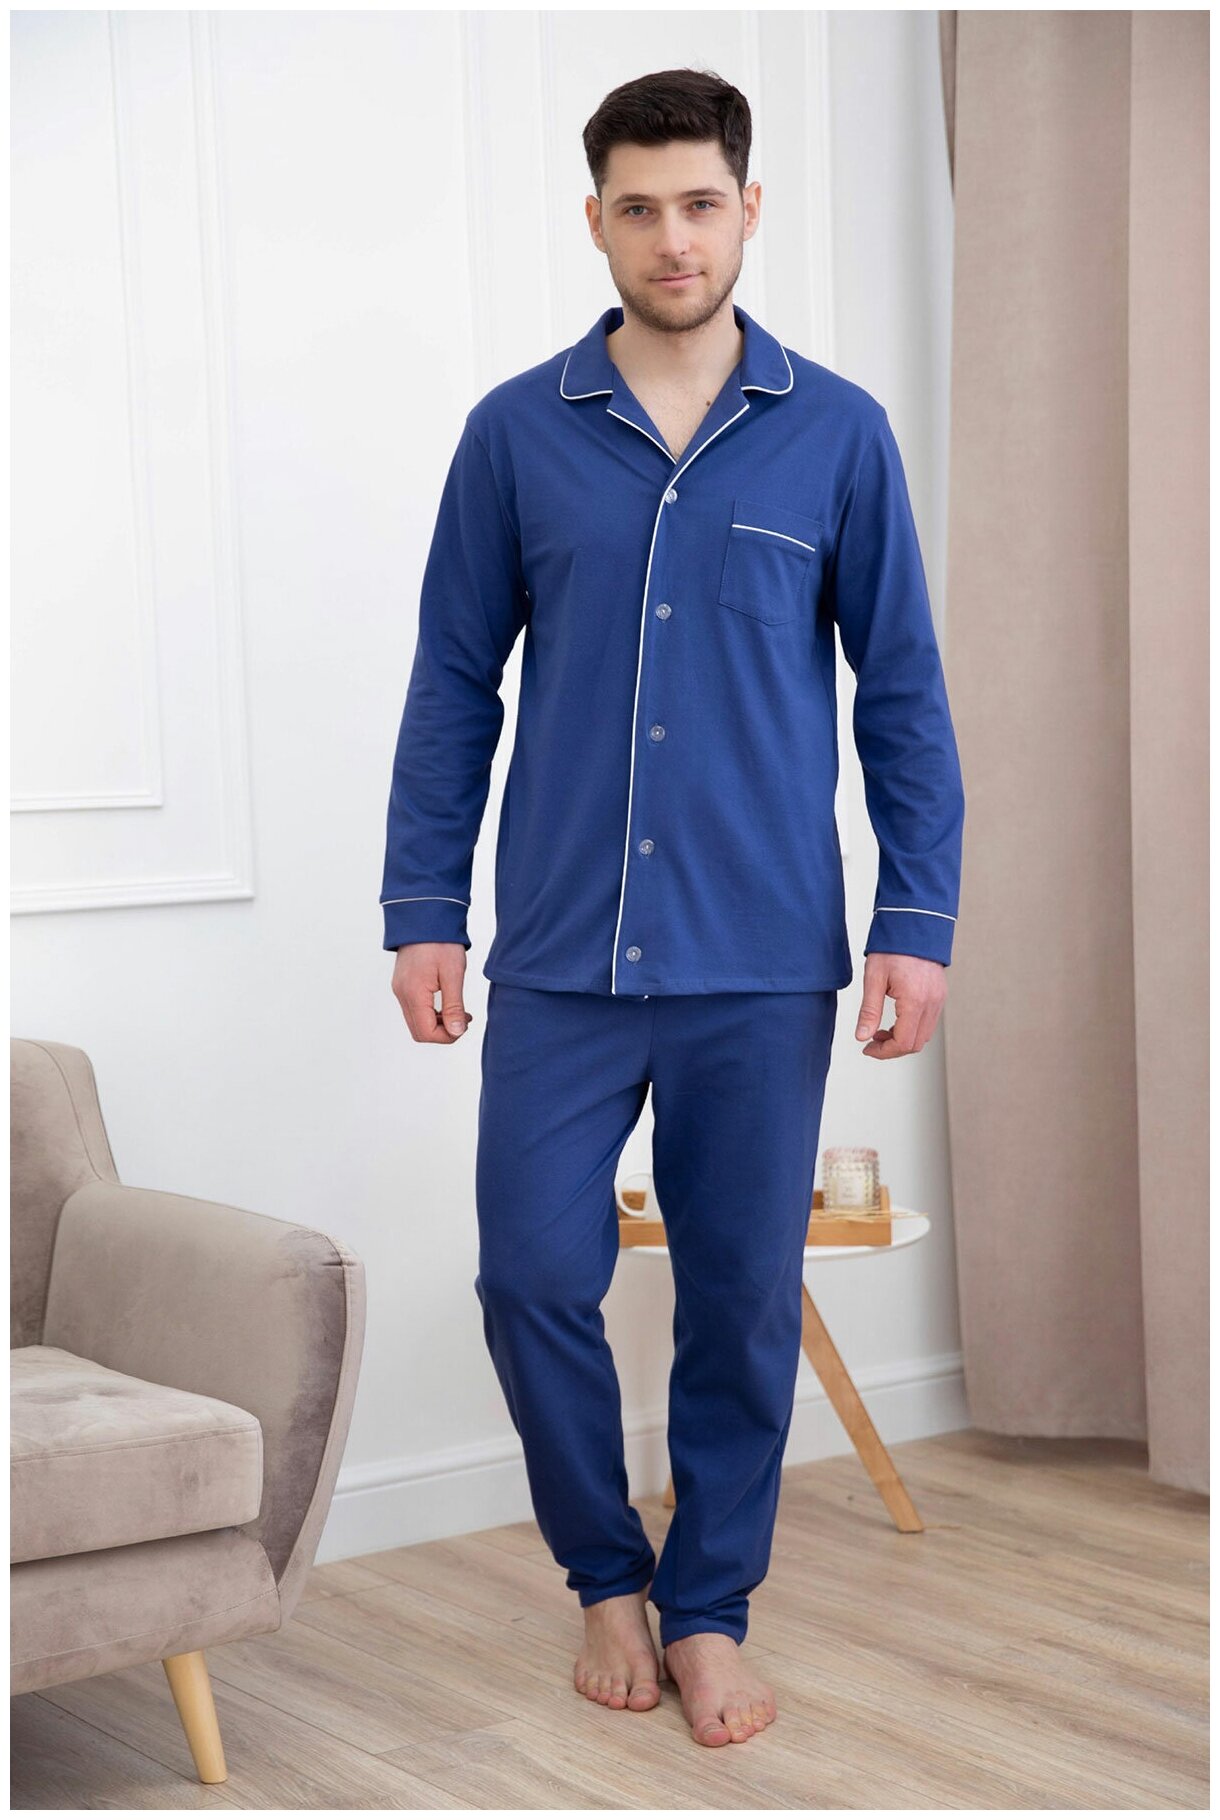 Мужская пижама с брюками Виктор Синий размер 50 Кулирка Лика Дресс рубашка с застежкой на пуговицы отложной воротник длинный рукав - фотография № 2